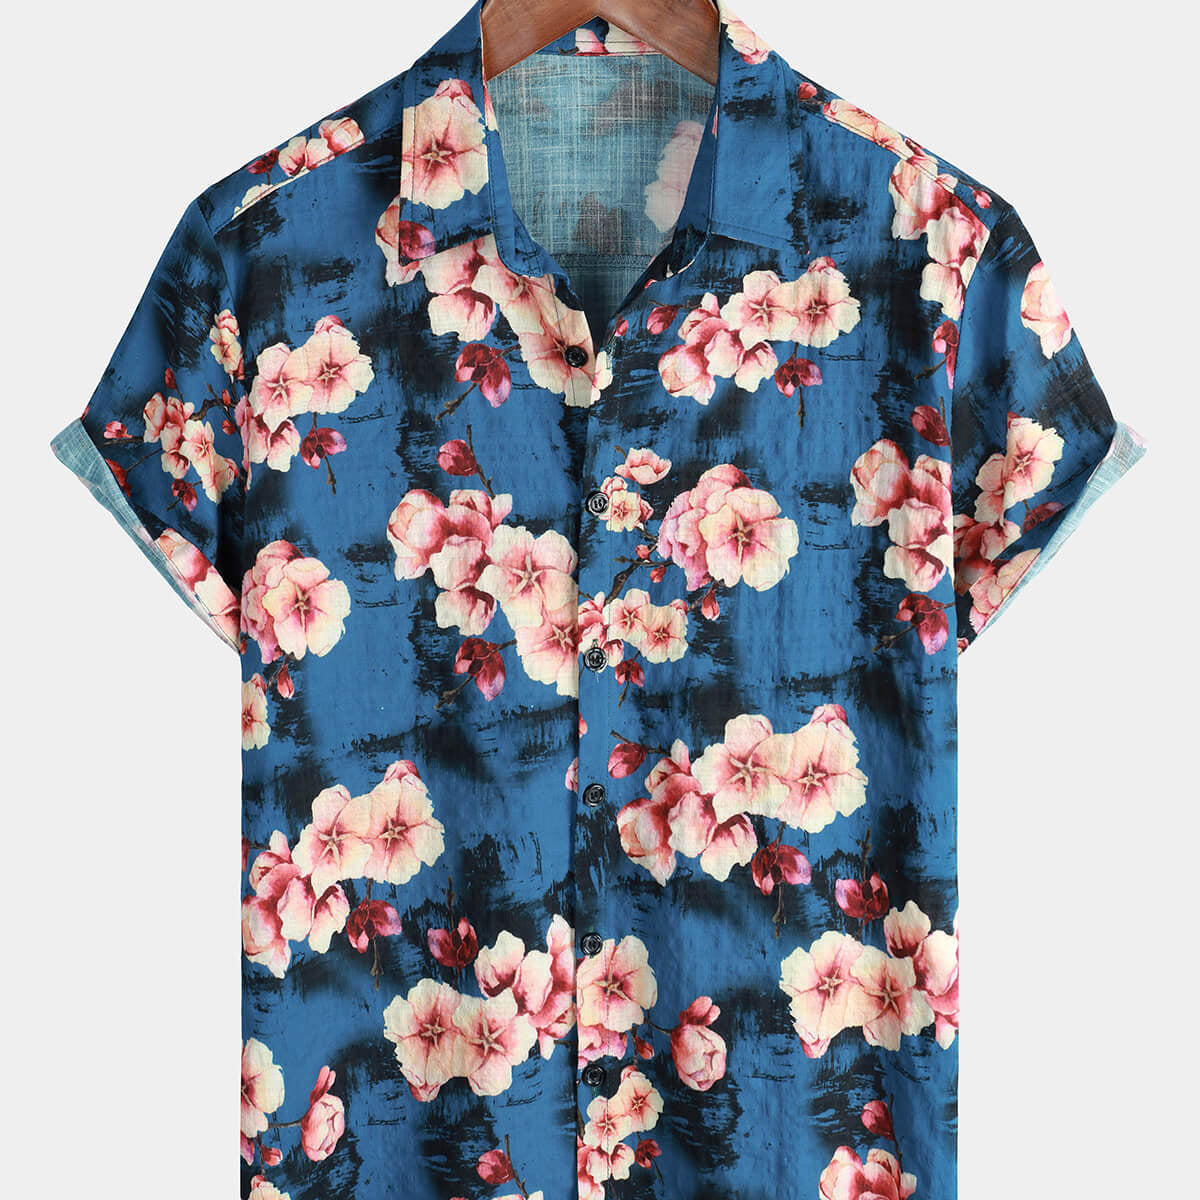 Men's Summer Floral Hawaiian Short Sleeve Button Up Beach Summer Shirt